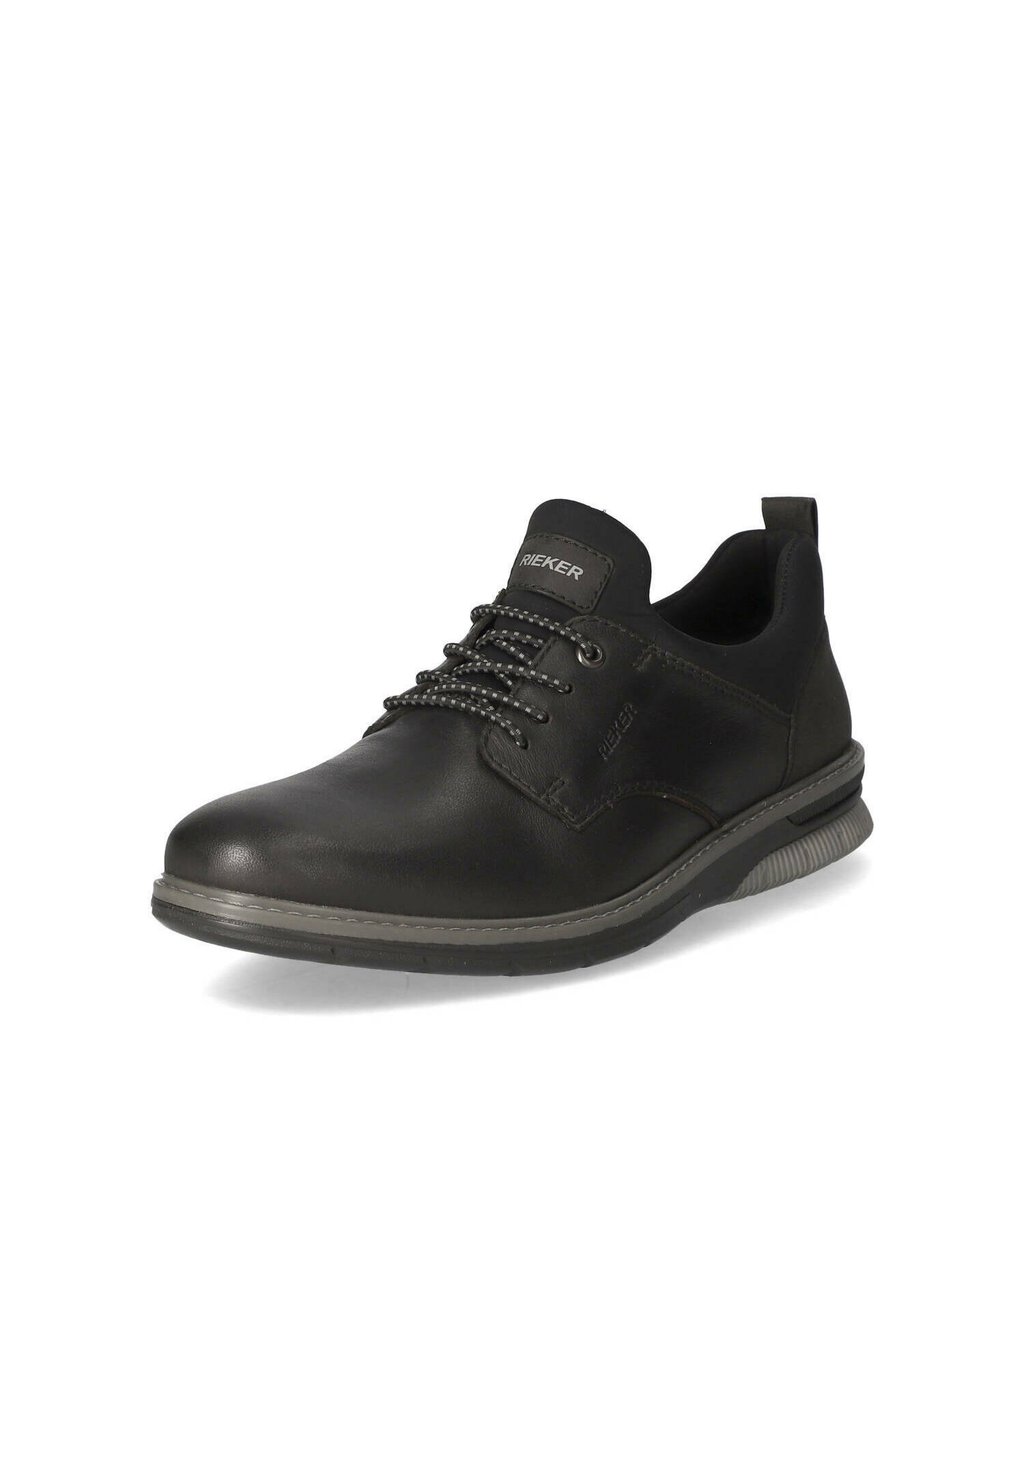 Спортивные туфли на шнуровке Rieker, цвет schwarz